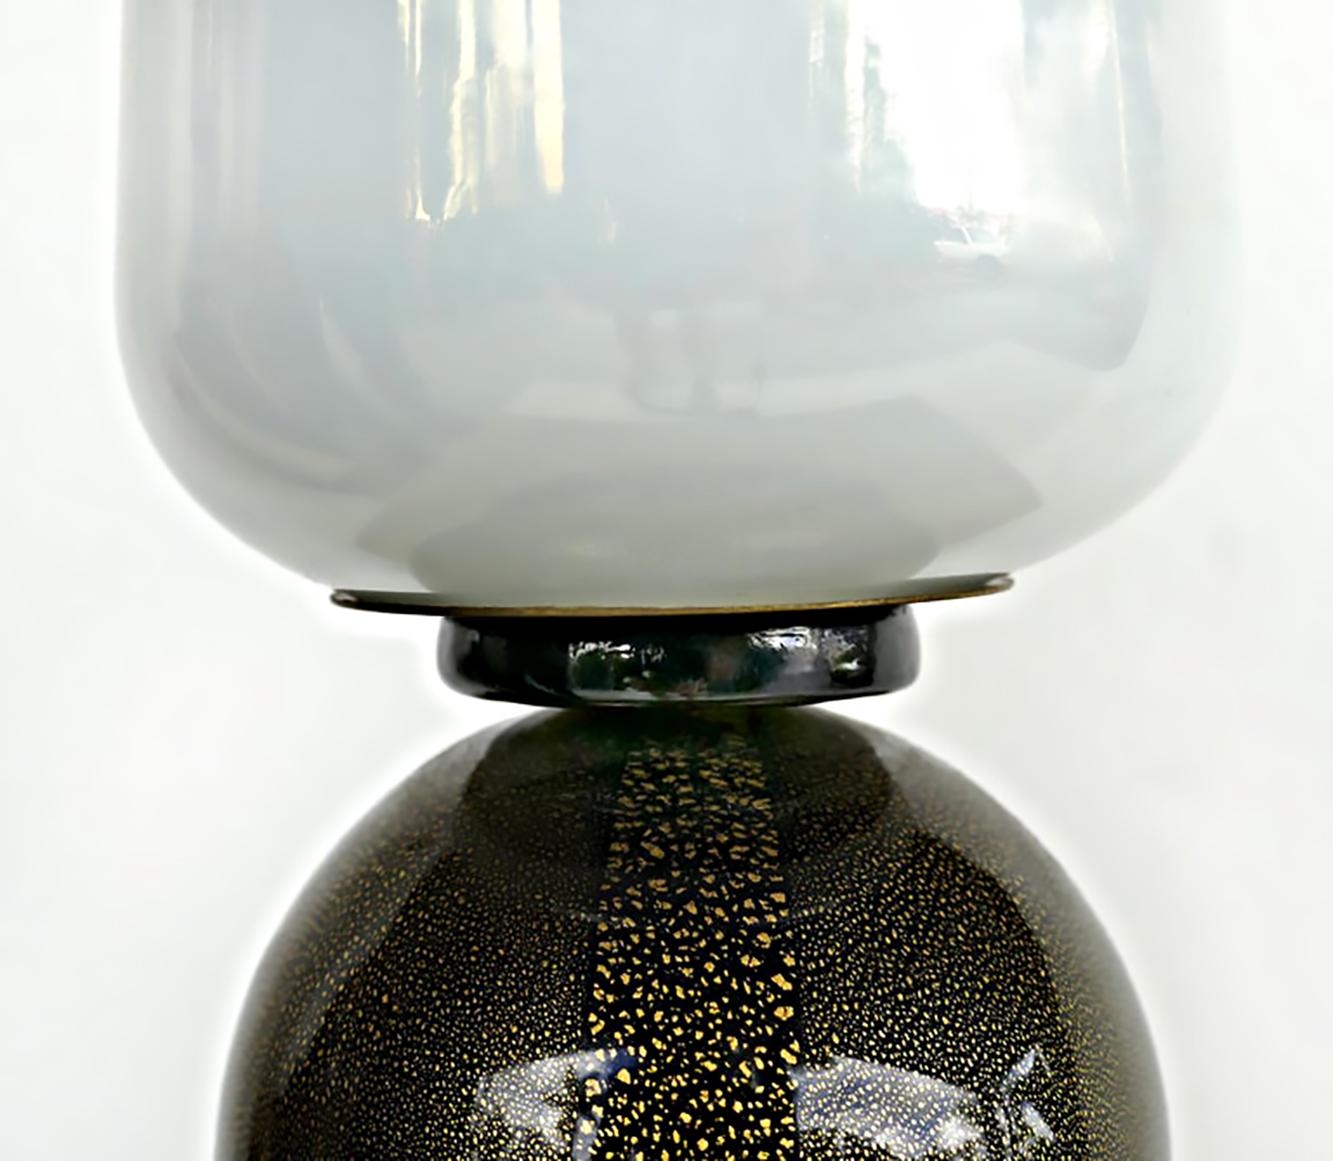 Lampe de table italienne en verre de Murano Barovier & Toso, années 1950.

Nous proposons à la vente une lampe de table en verre Barovier & Toso datant des années 1950. La lampe est câblée pour les prises électriques américaines et dispose d'un